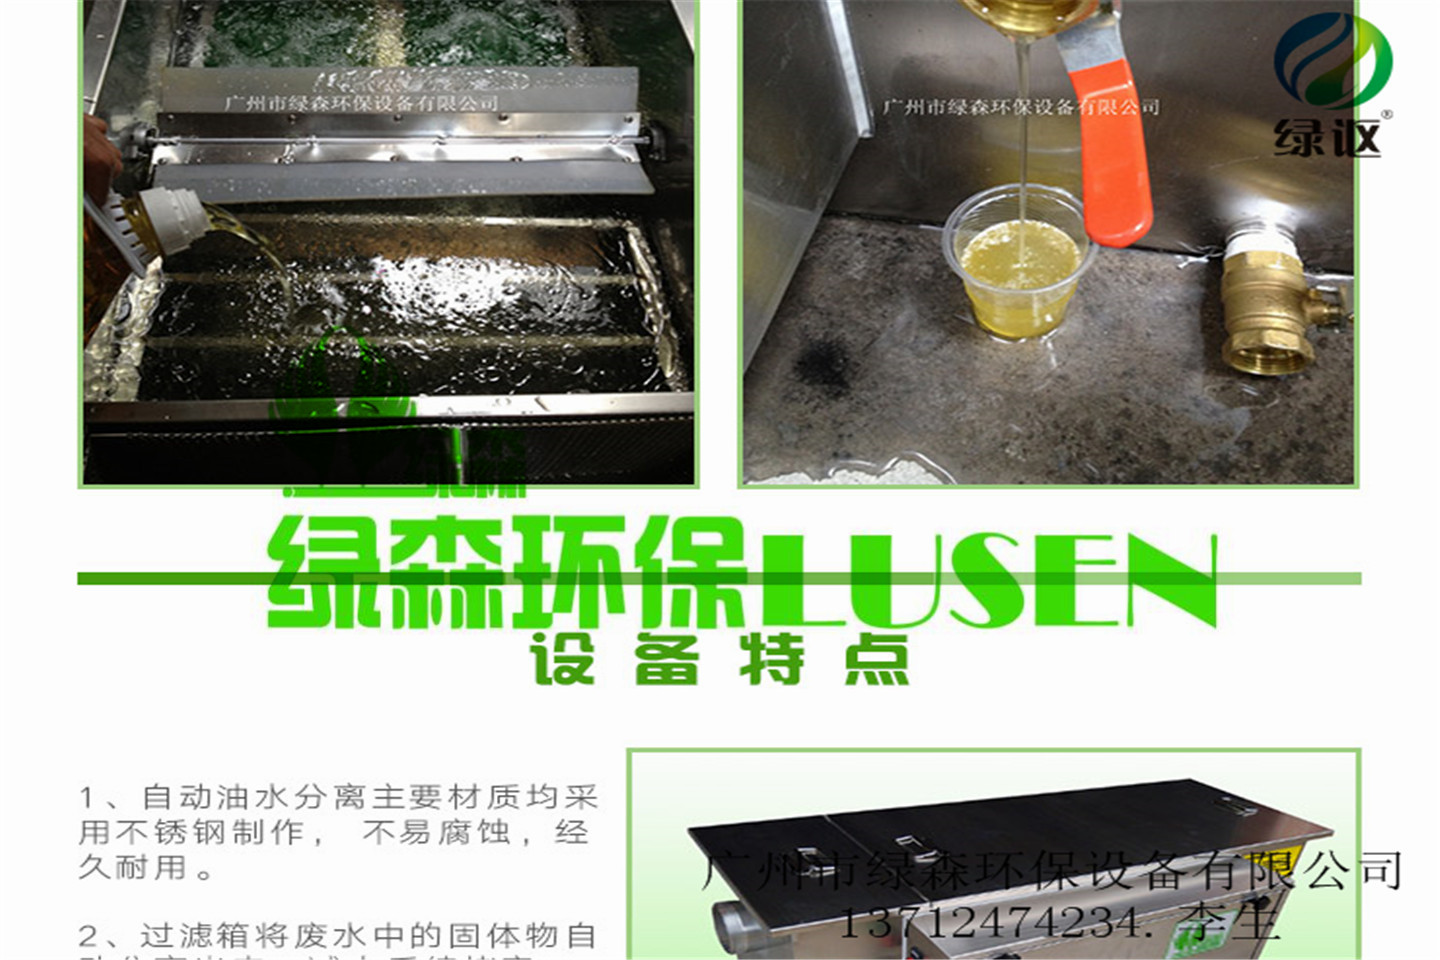 惠州餐饮用全自动油水分离设备厂家惠州餐饮用全自动油水分离设备厂家.绿森厂家